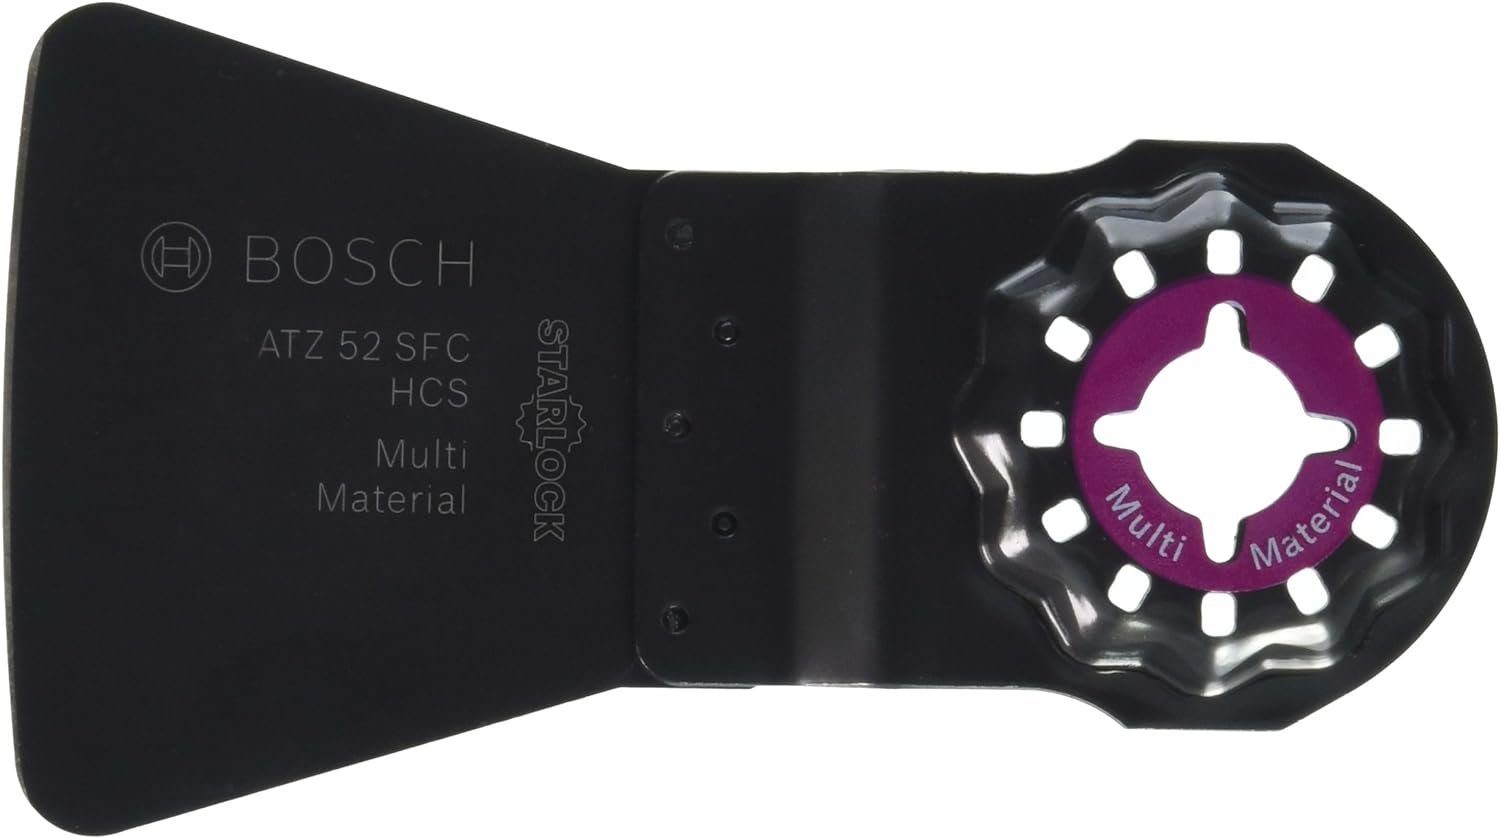 BOSCH Bohrfutter x Bosch mm 52 Starlock SFC, ATZ flexibel 38 Schaber 52 HCS